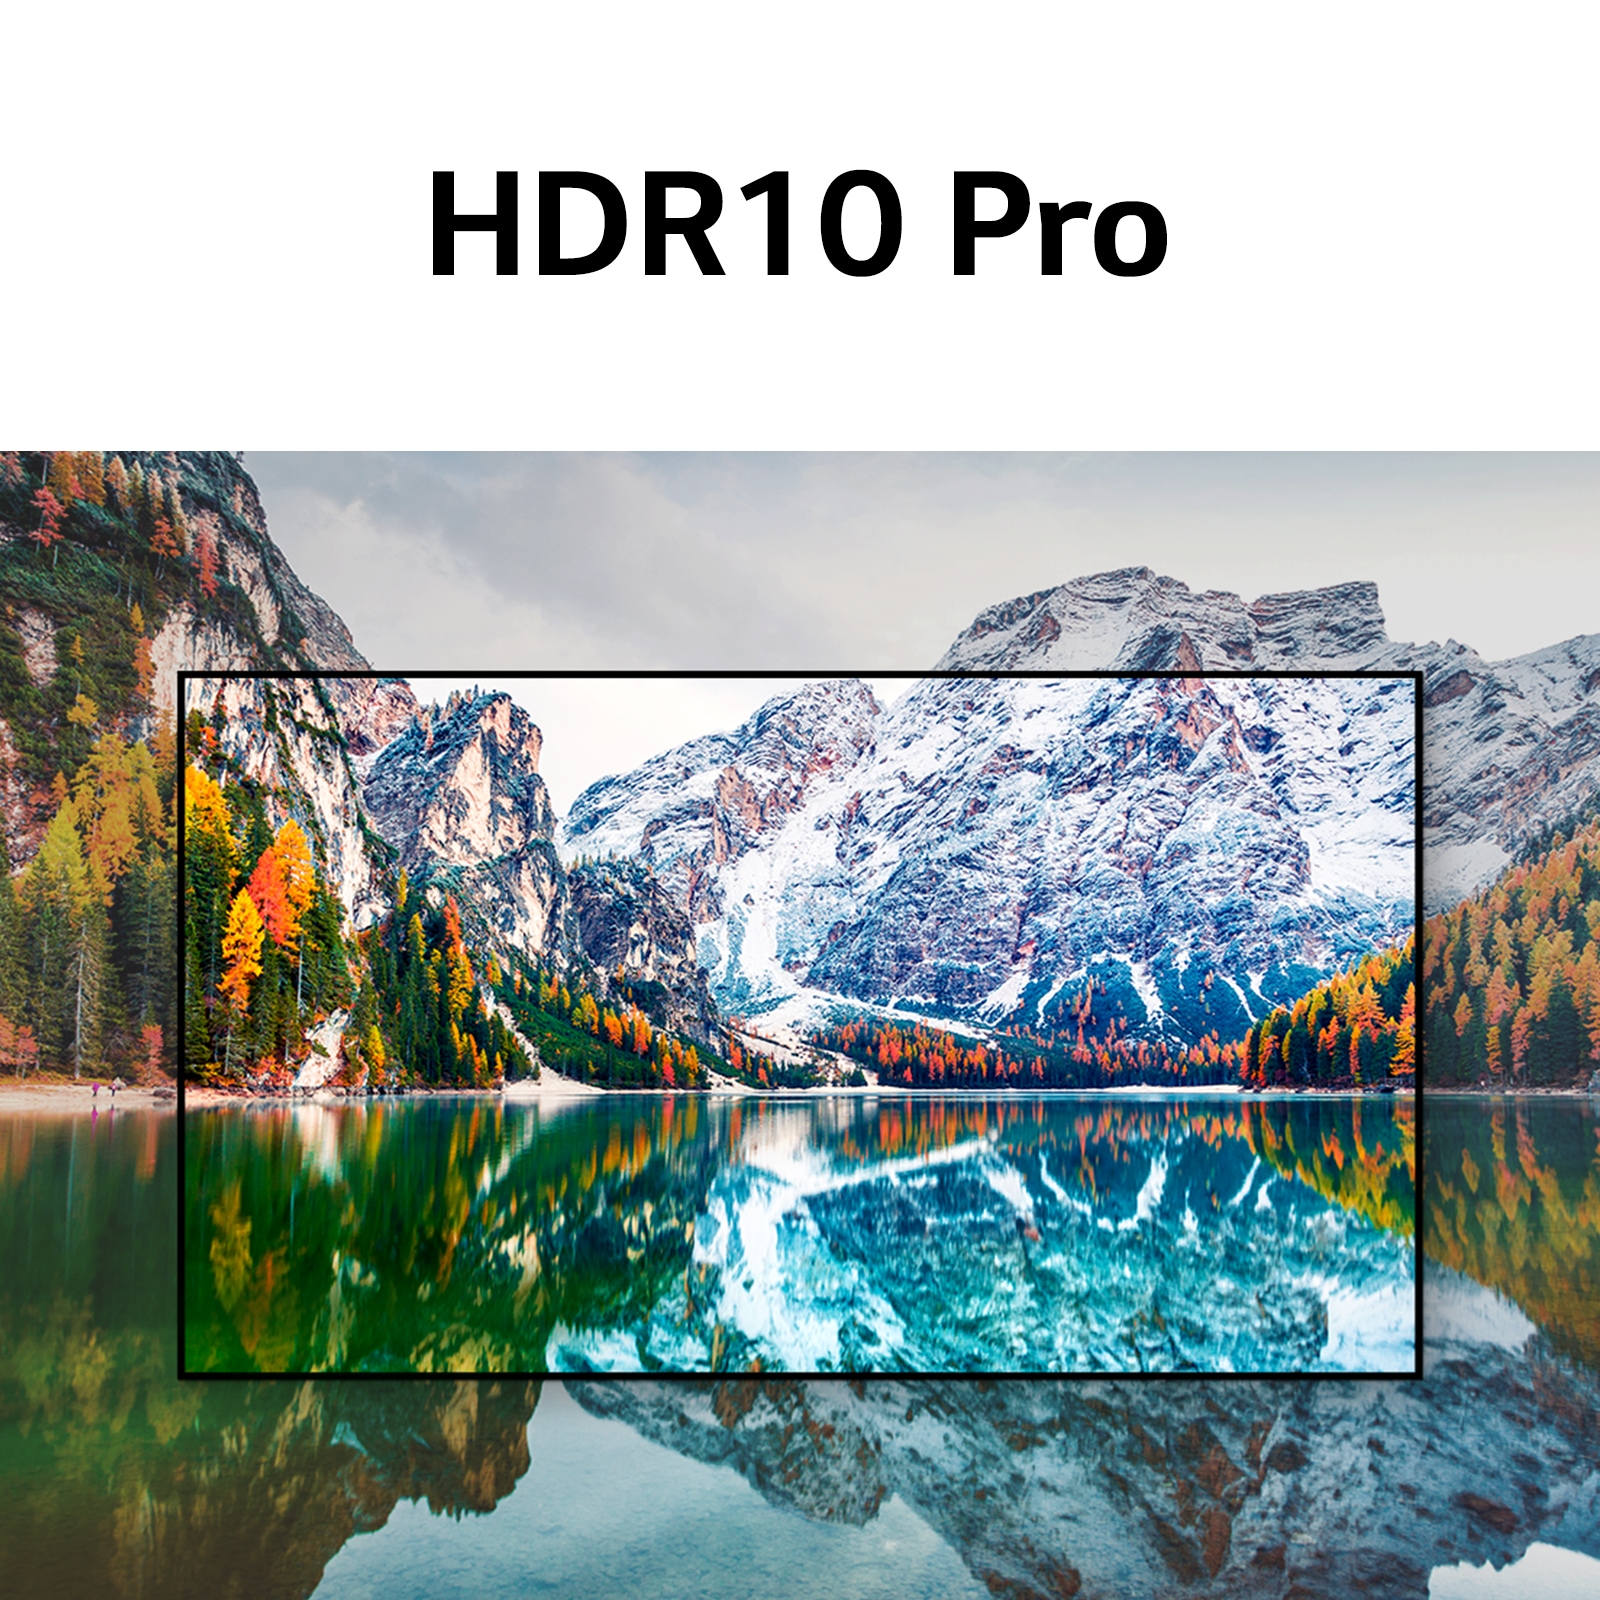 Syksyinen vuoristomaisema, sekä teksti HDR10 Pro